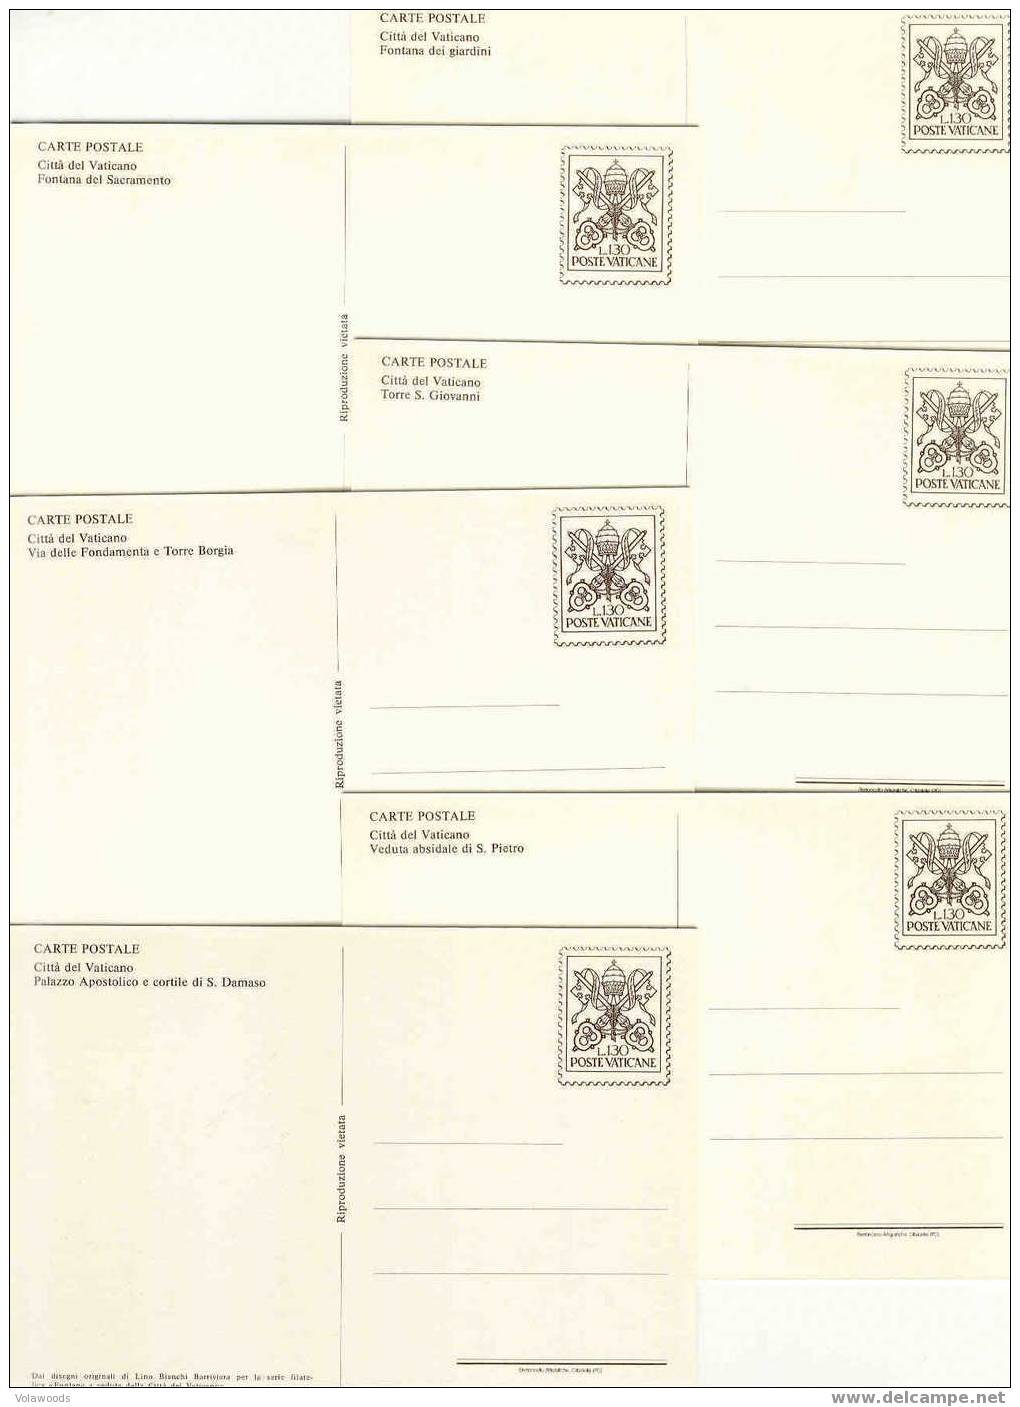 Vaticano - Cartoline Postali Nuove: Fontane E Vedute In Contenitore - 1978 - Postal Stationeries